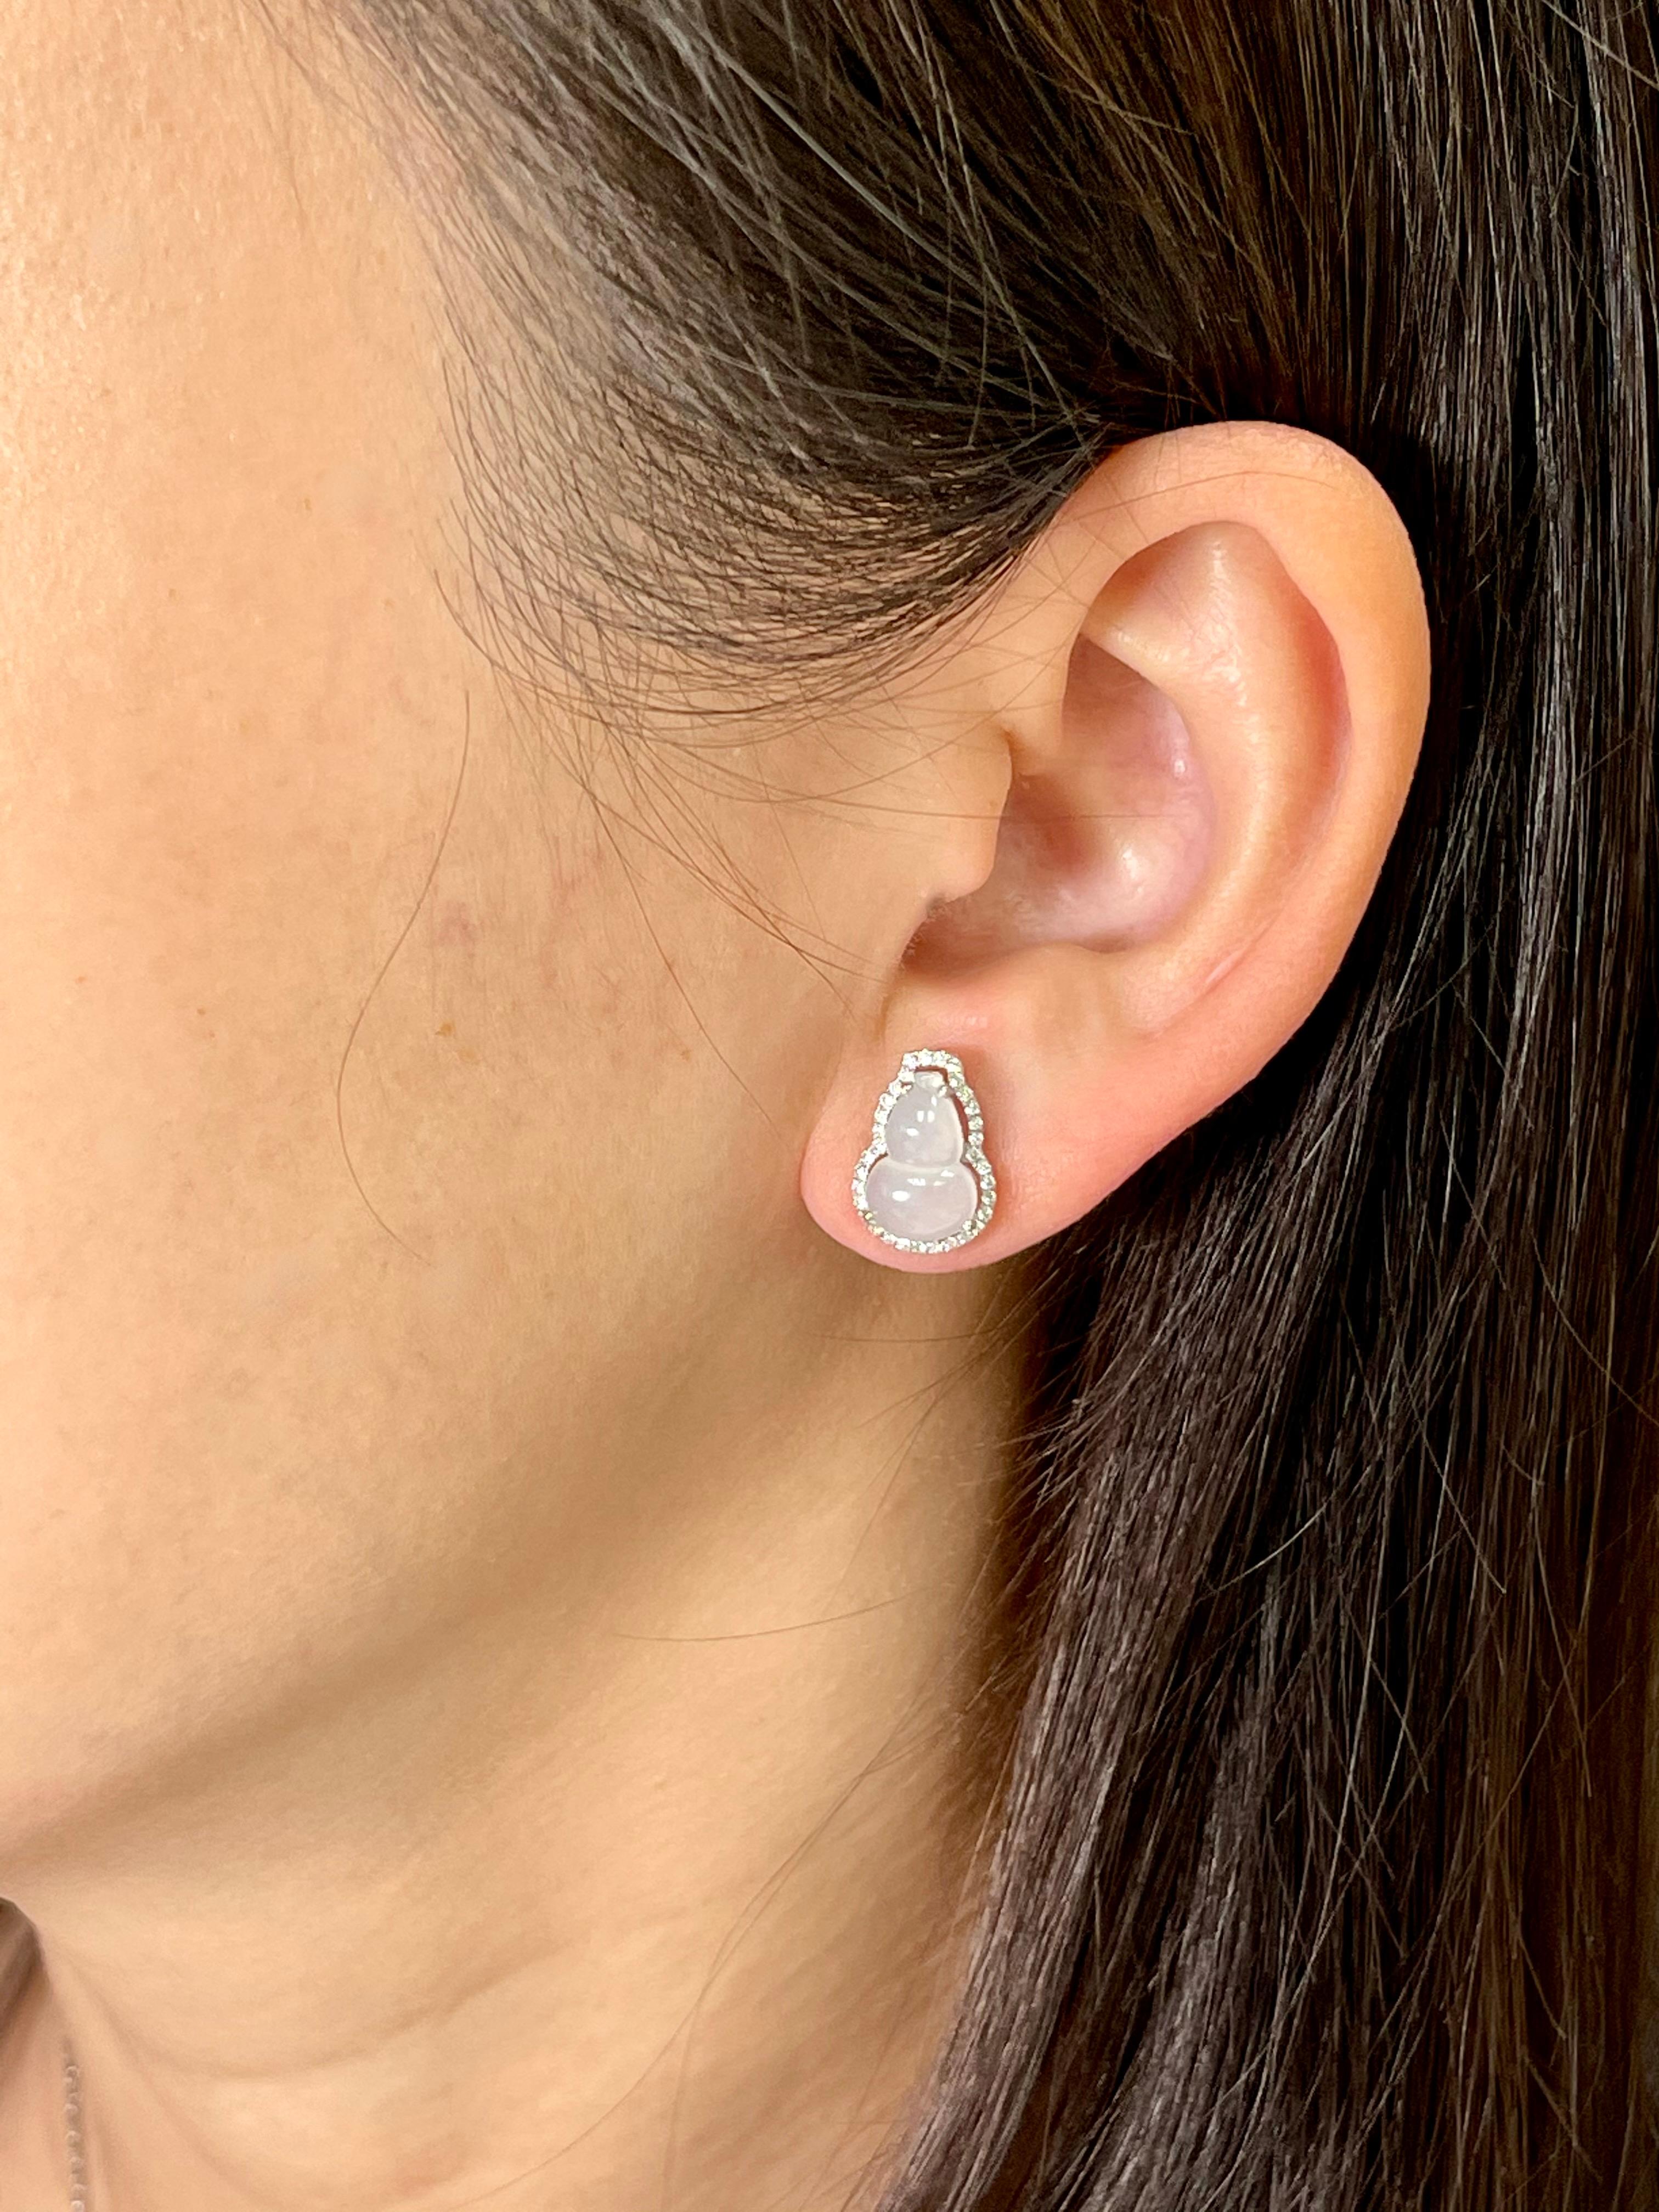 Les boucles d'oreilles en jade glacé parfaites ! Voici une paire de boucles d'oreilles en jadéite glacée naturelle et en diamant. Le jade glacé de cette qualité est extrêmement difficile à trouver et est très demandé. Il est certifié incolore. Les